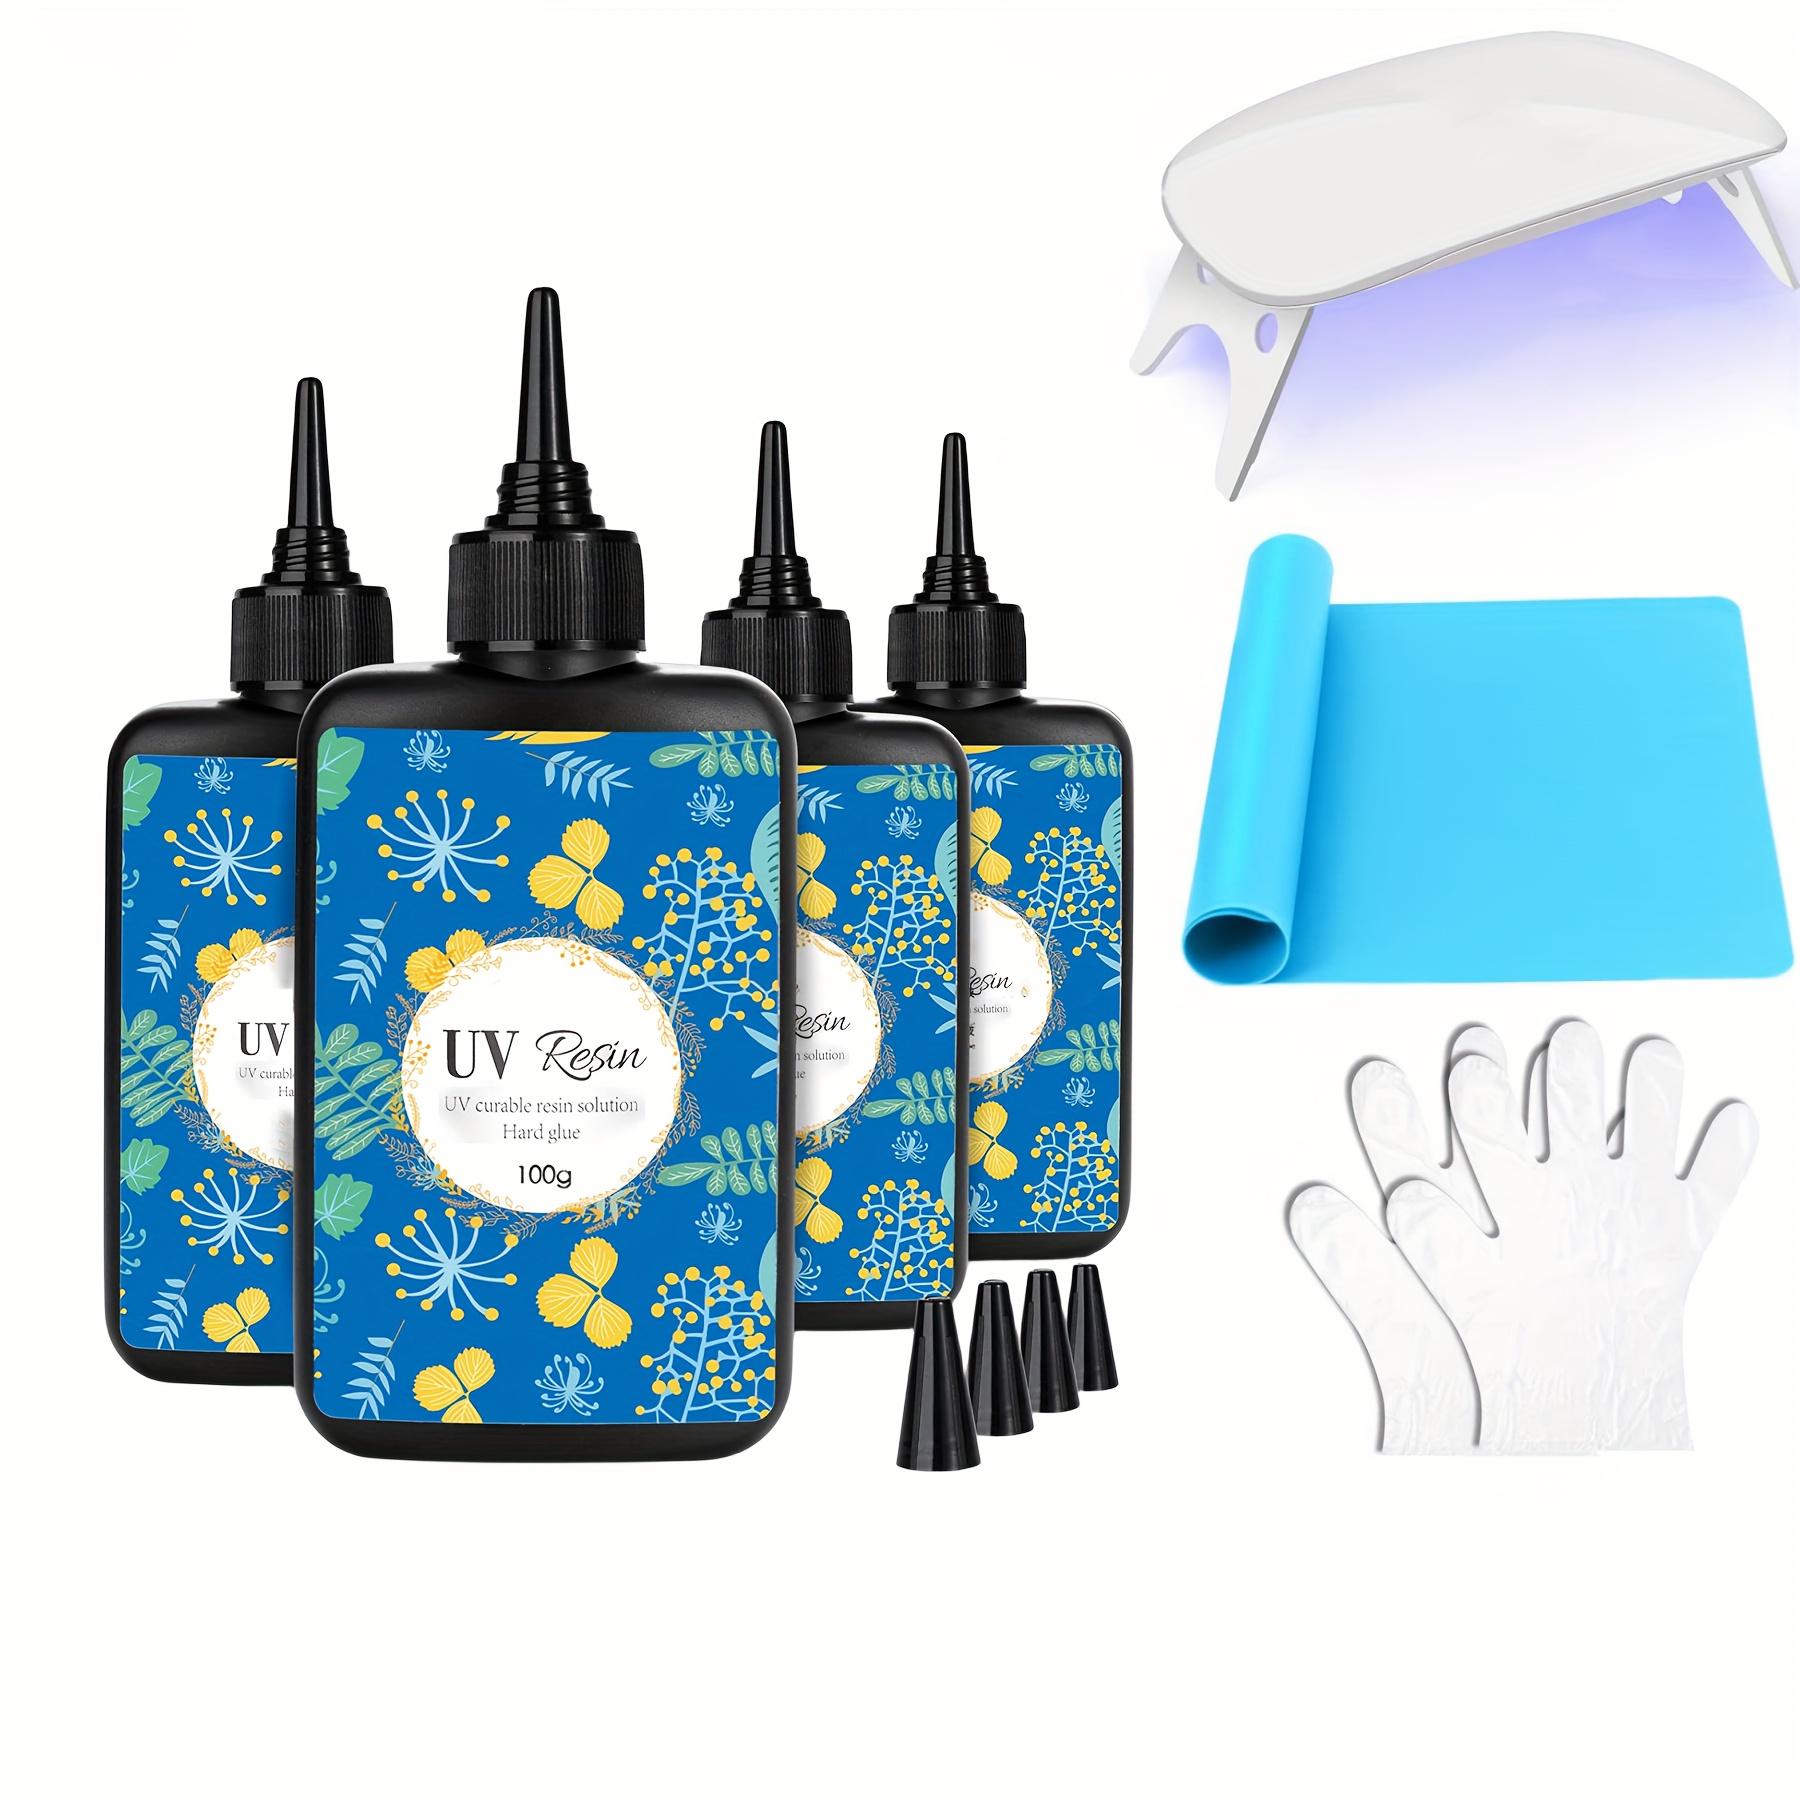 Hophine UV Light for Resin,36W Foldable UV Resin Light, Fast Curing &  Timing Function UV Lamp,Resin Supplies,UV Resin Kits for Resin Molds,  Jewelry